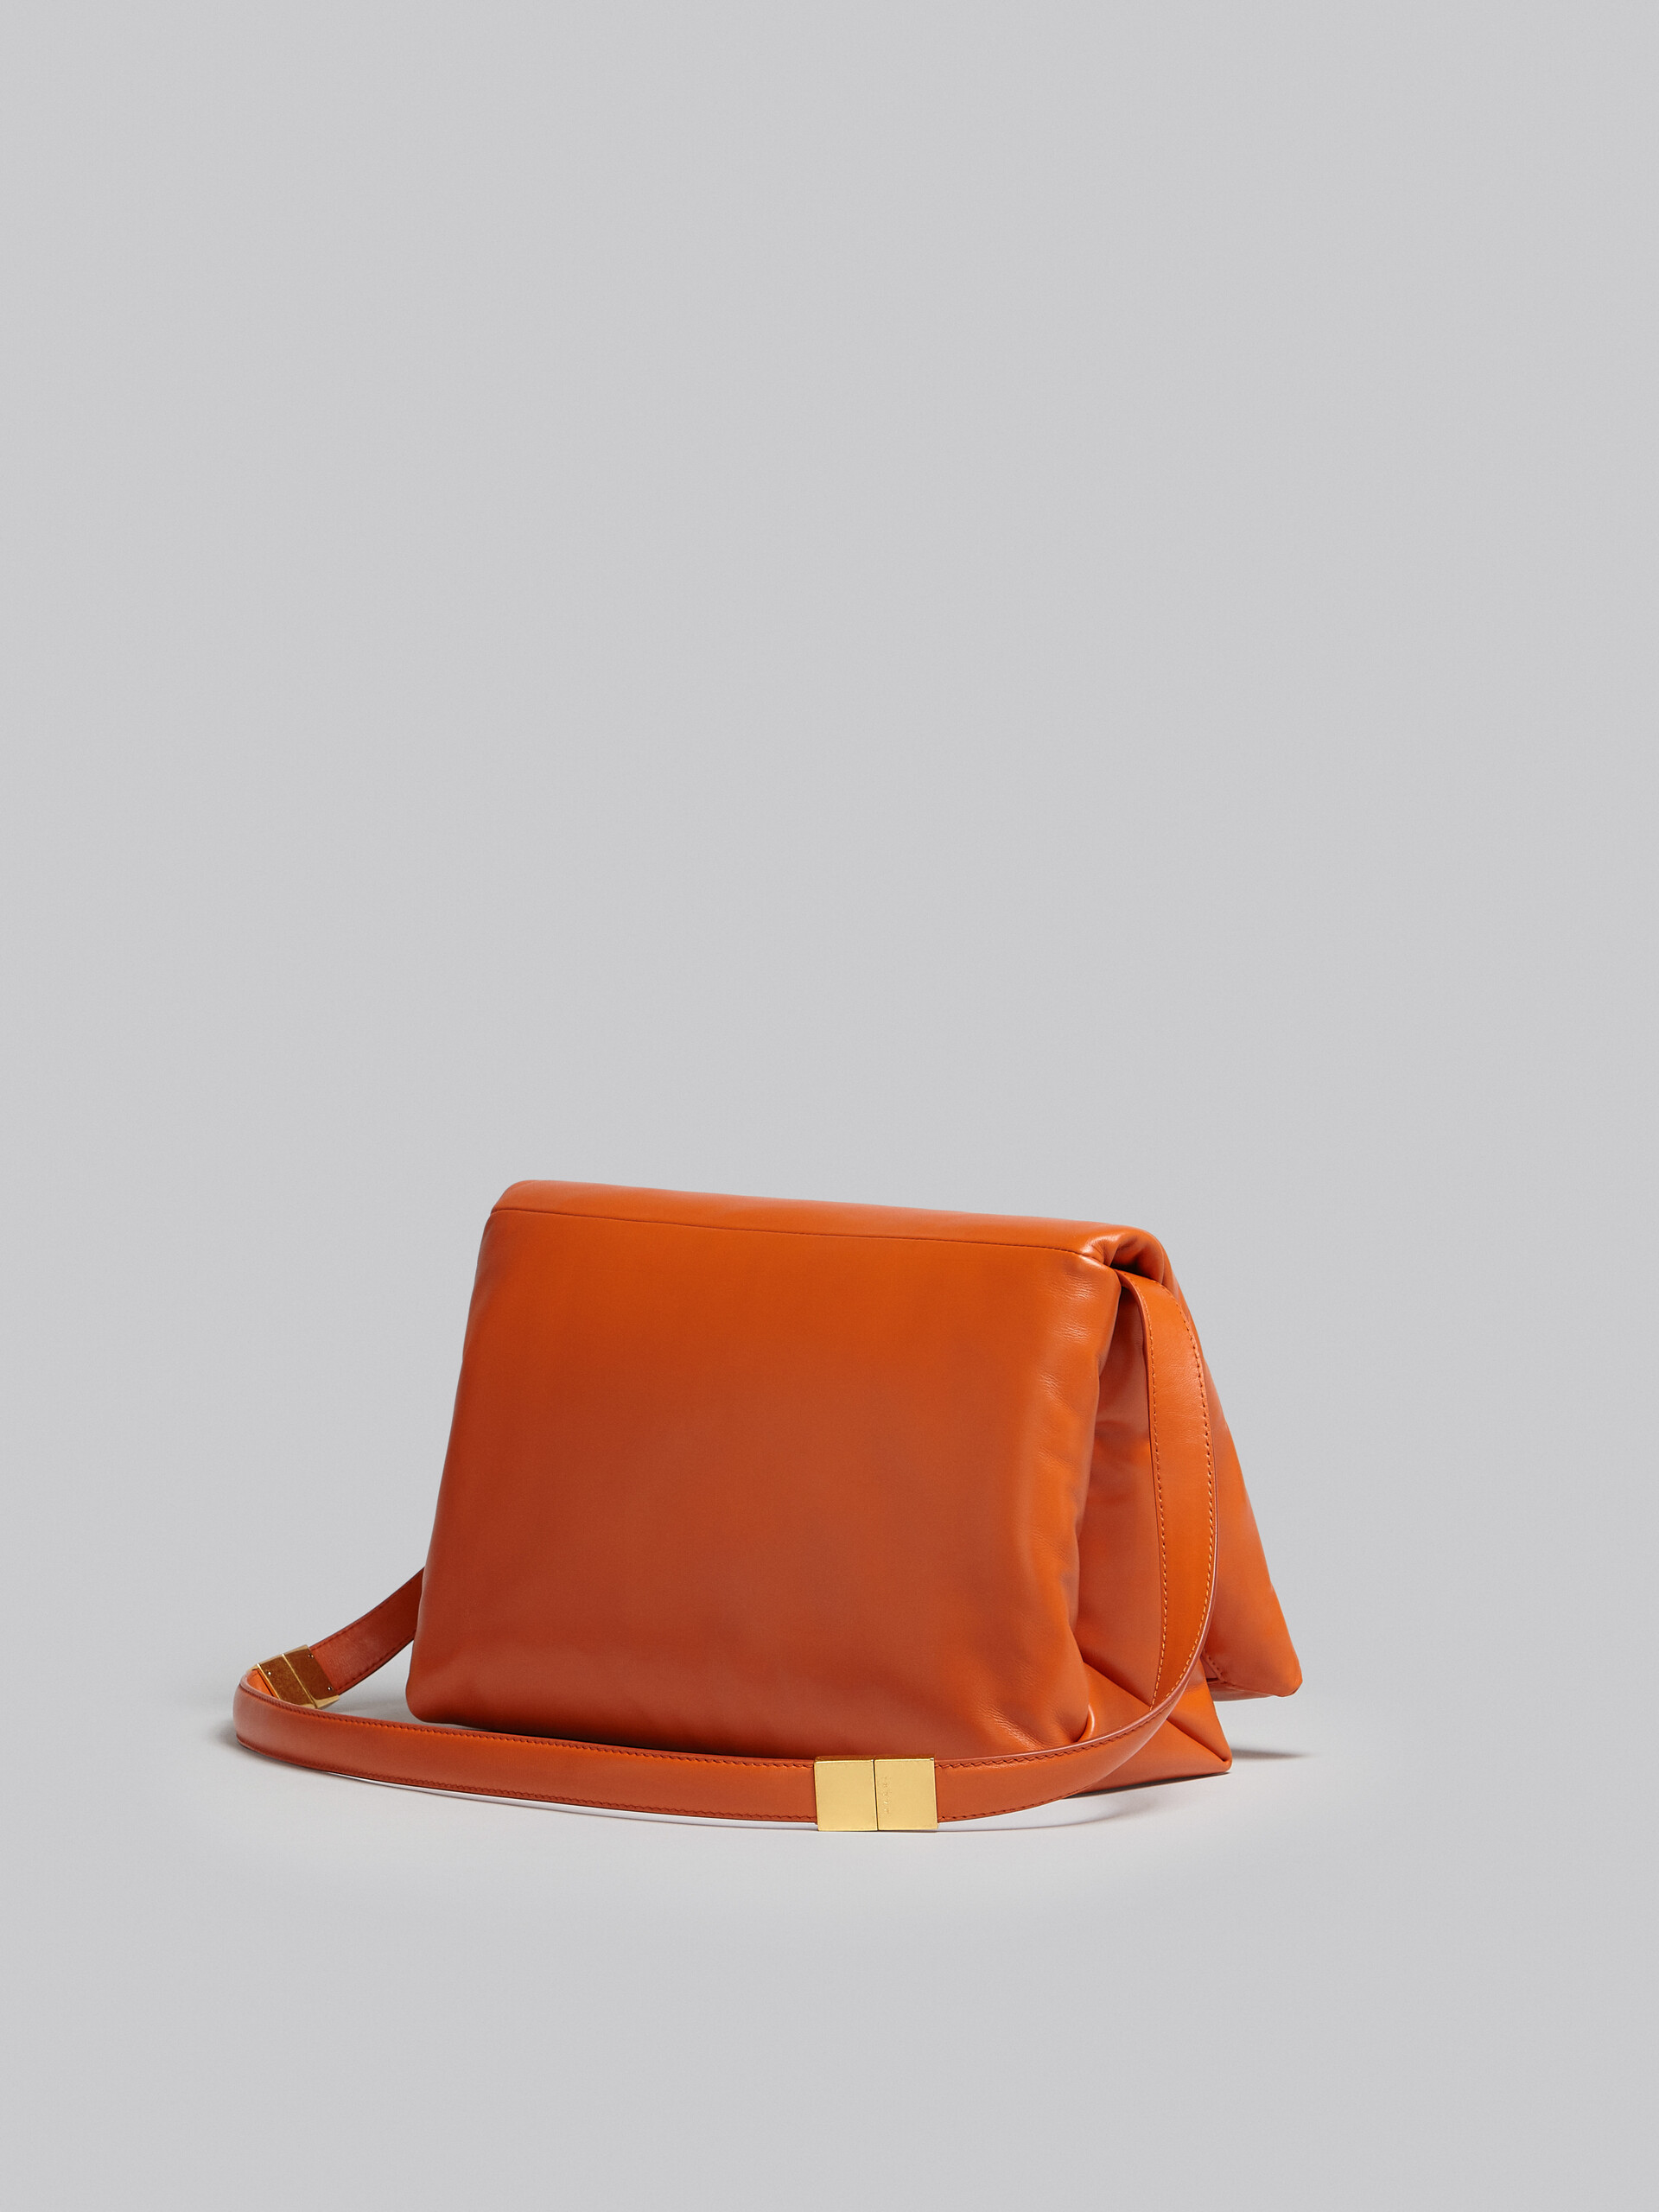 Large orange calsfkin Prisma bag - Shoulder Bag - Image 3